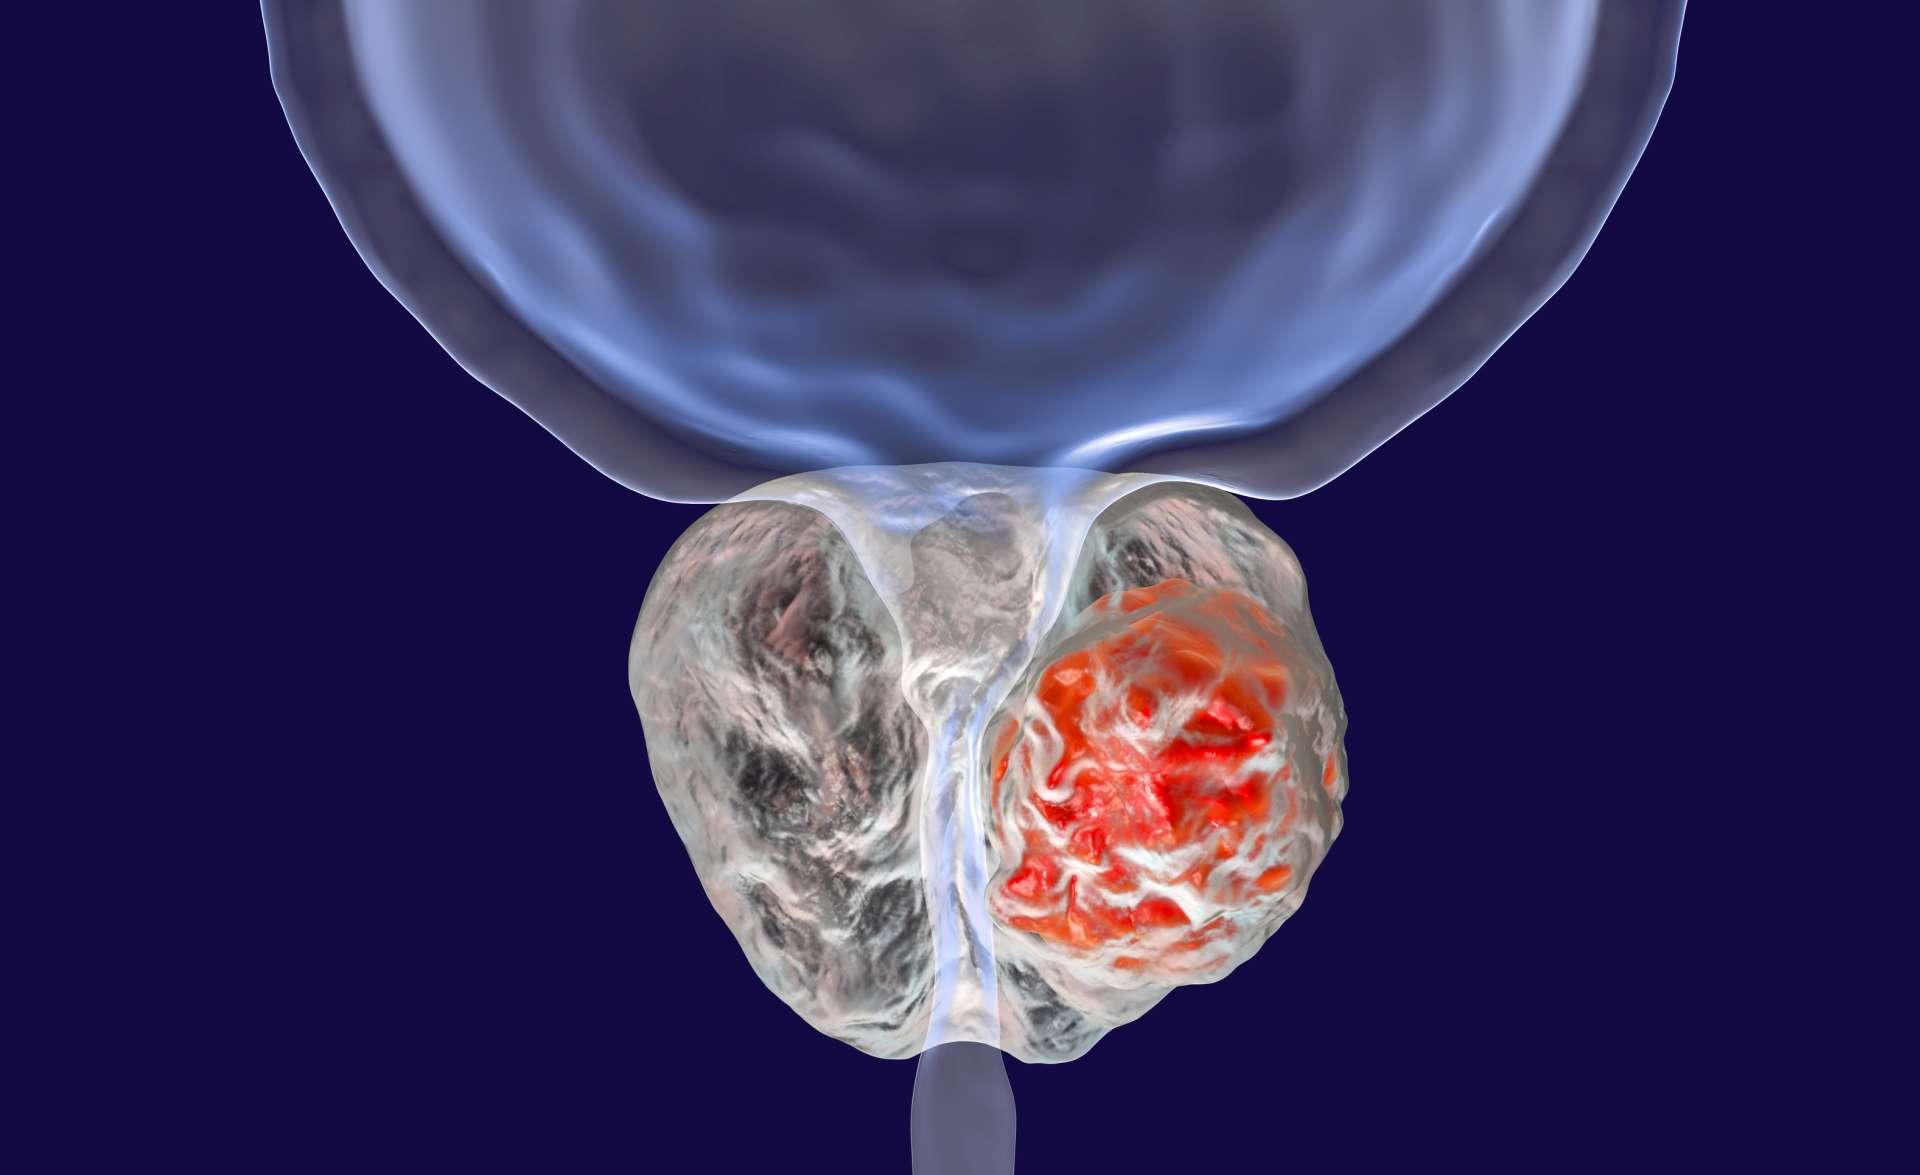 Prostatakrebs, 3D-Darstellung, die das Vorhandensein eines Tumors in der Prostata zeigt, der die Harnröhre komprimiert